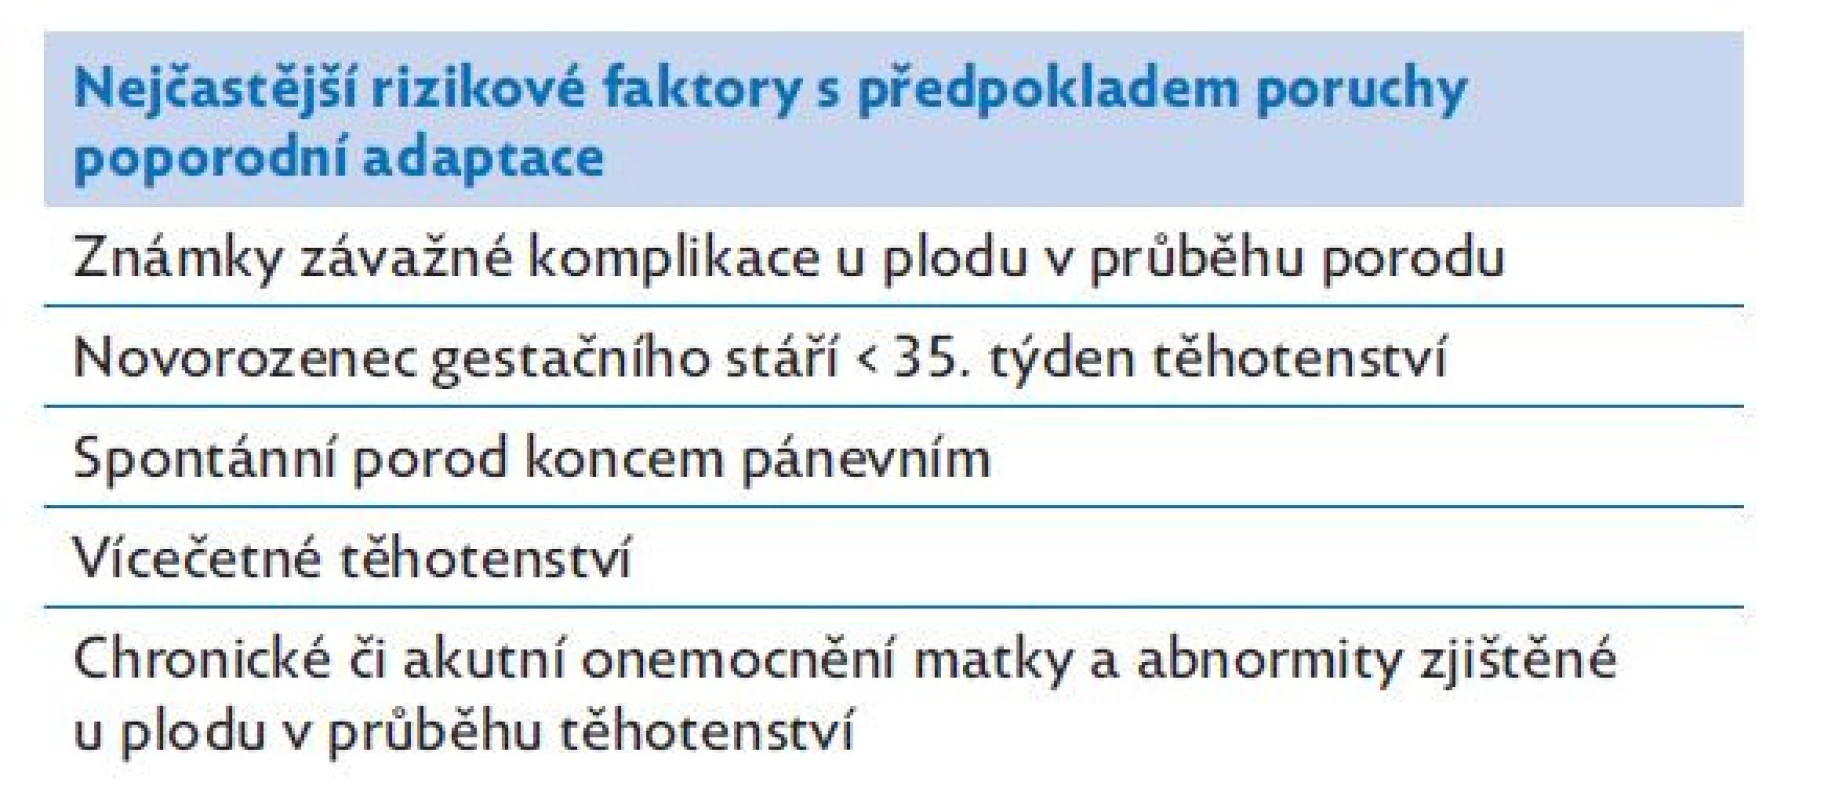 Rizikové faktory pro poruchu poporodní adaptace
novorozence (Zdroj: Janota J, Straňák Z. Neonatologie. Praha:
Mladá fronta 2013.)